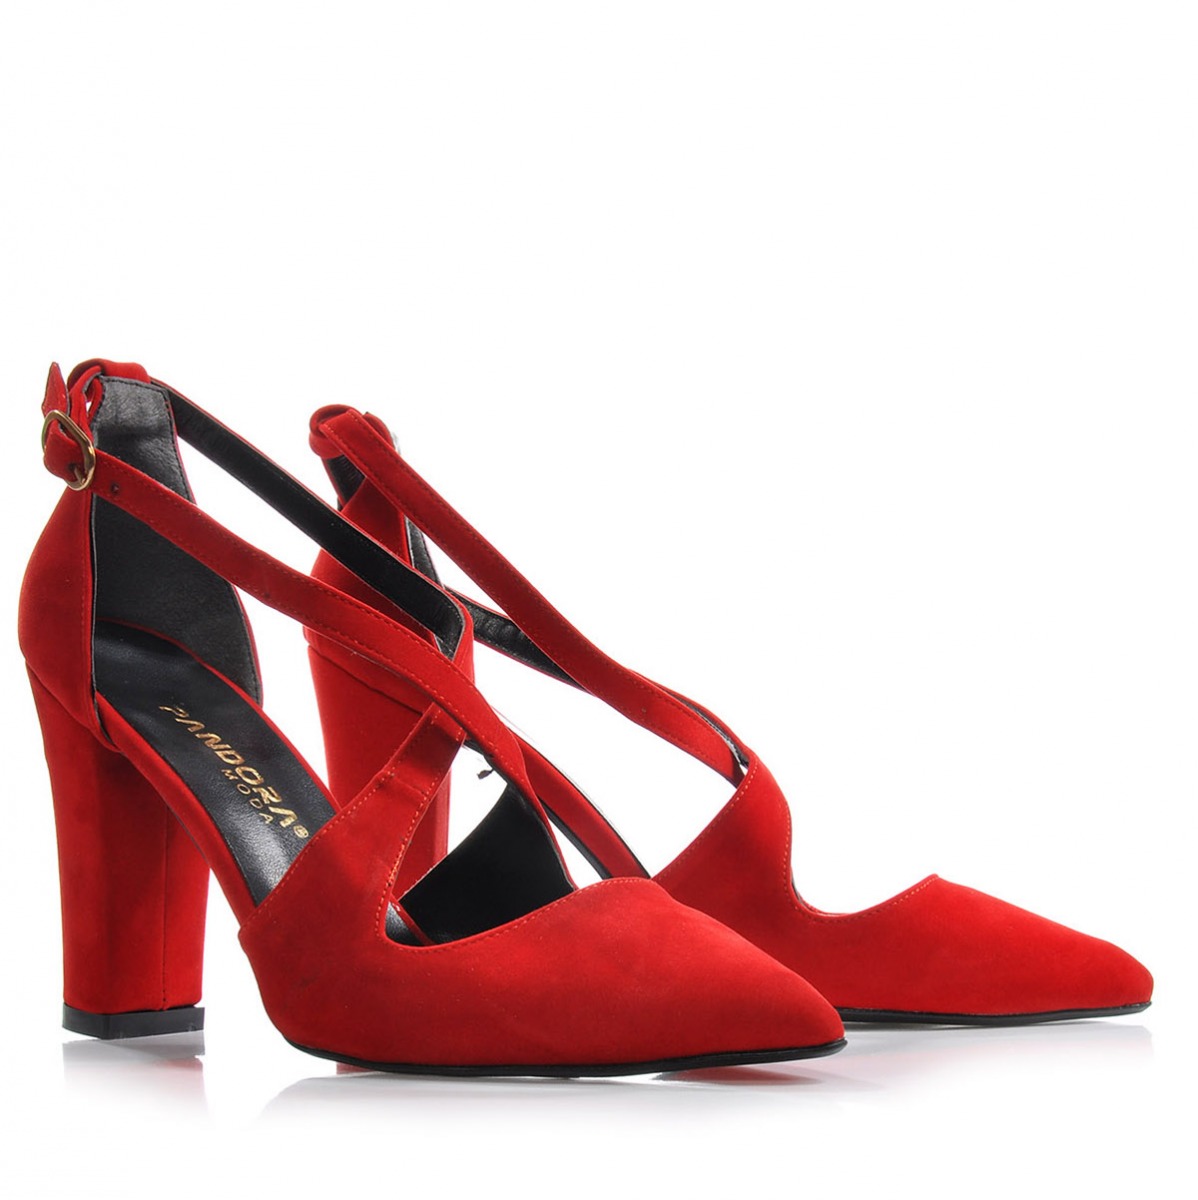 Flo Kadın  Kırmızı-Süet Klasik Topuklu Ayakkabı VZN-179Y. 4